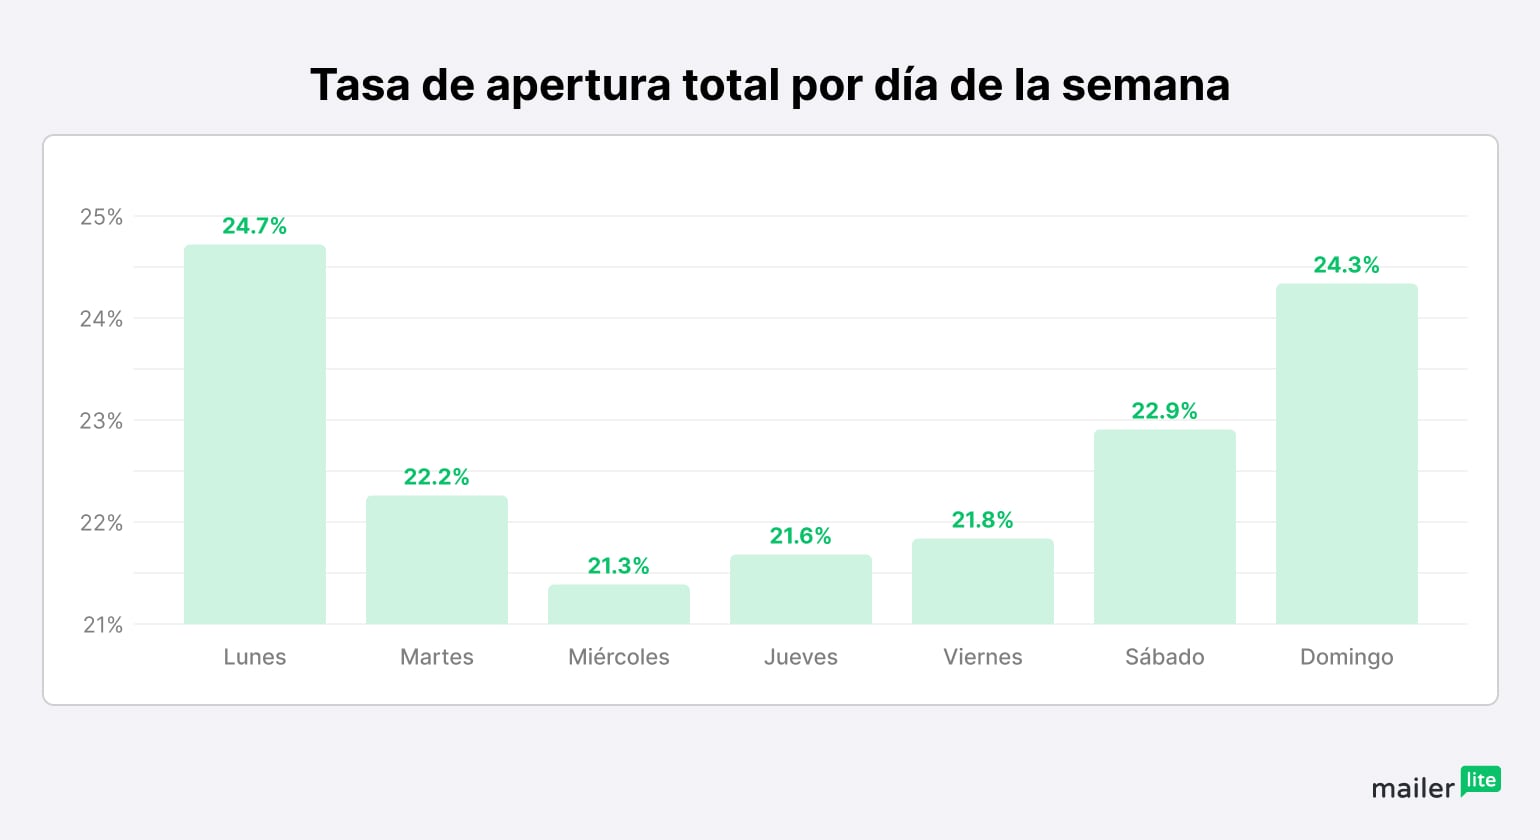 Tasa de apertura totales por día de la semana en países de habla hispana (menos España)